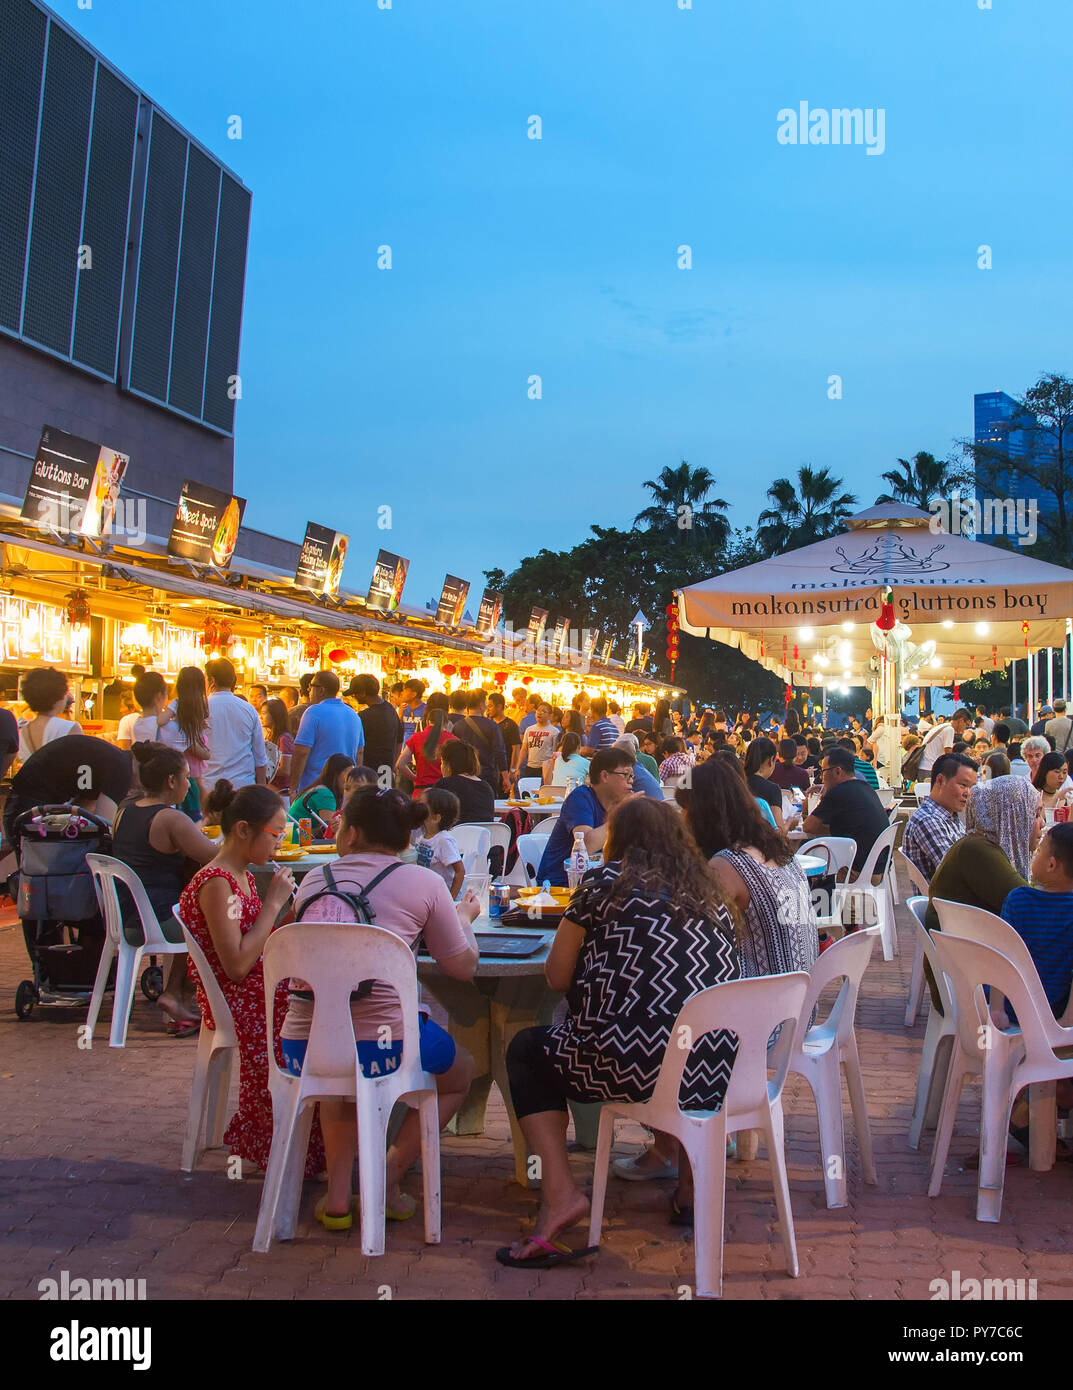 Singapur - Jan 14, 2017: Die Menschen in der beliebten Food Court in Singapur. Preiswertes essen Gerichte sind zahlreich in der Stadt, also die meisten Singapurer speisen Sie a Stockfoto